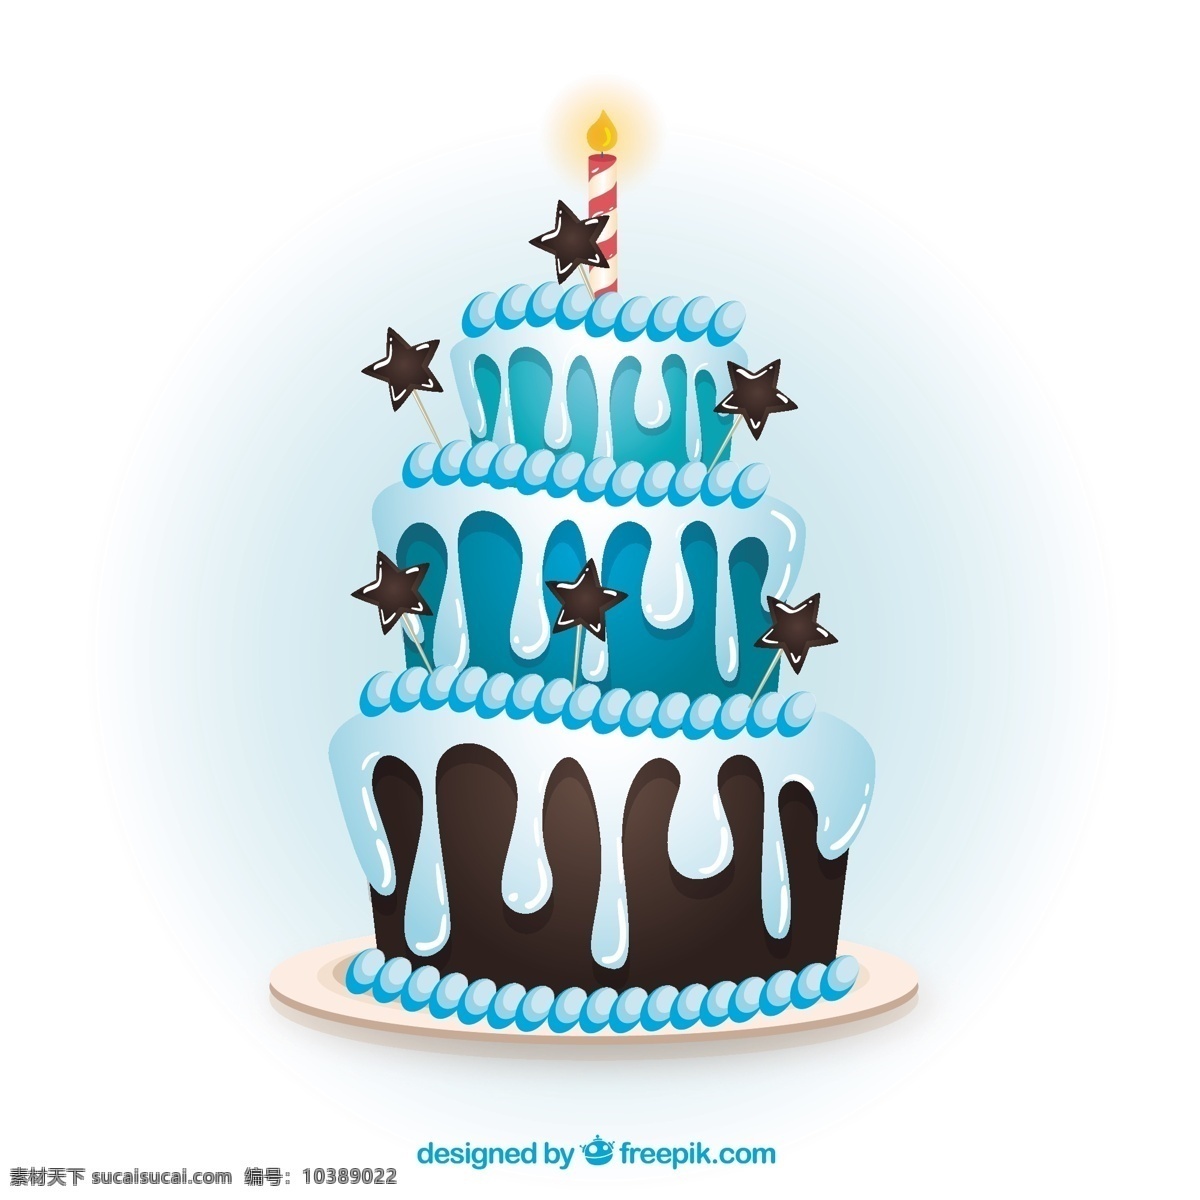 卡通 风格 蓝色 生日蛋糕 生日 聚会 蛋糕 蓝 庆典 甜 生日聚会 庆祝 糕点 好吃 白色